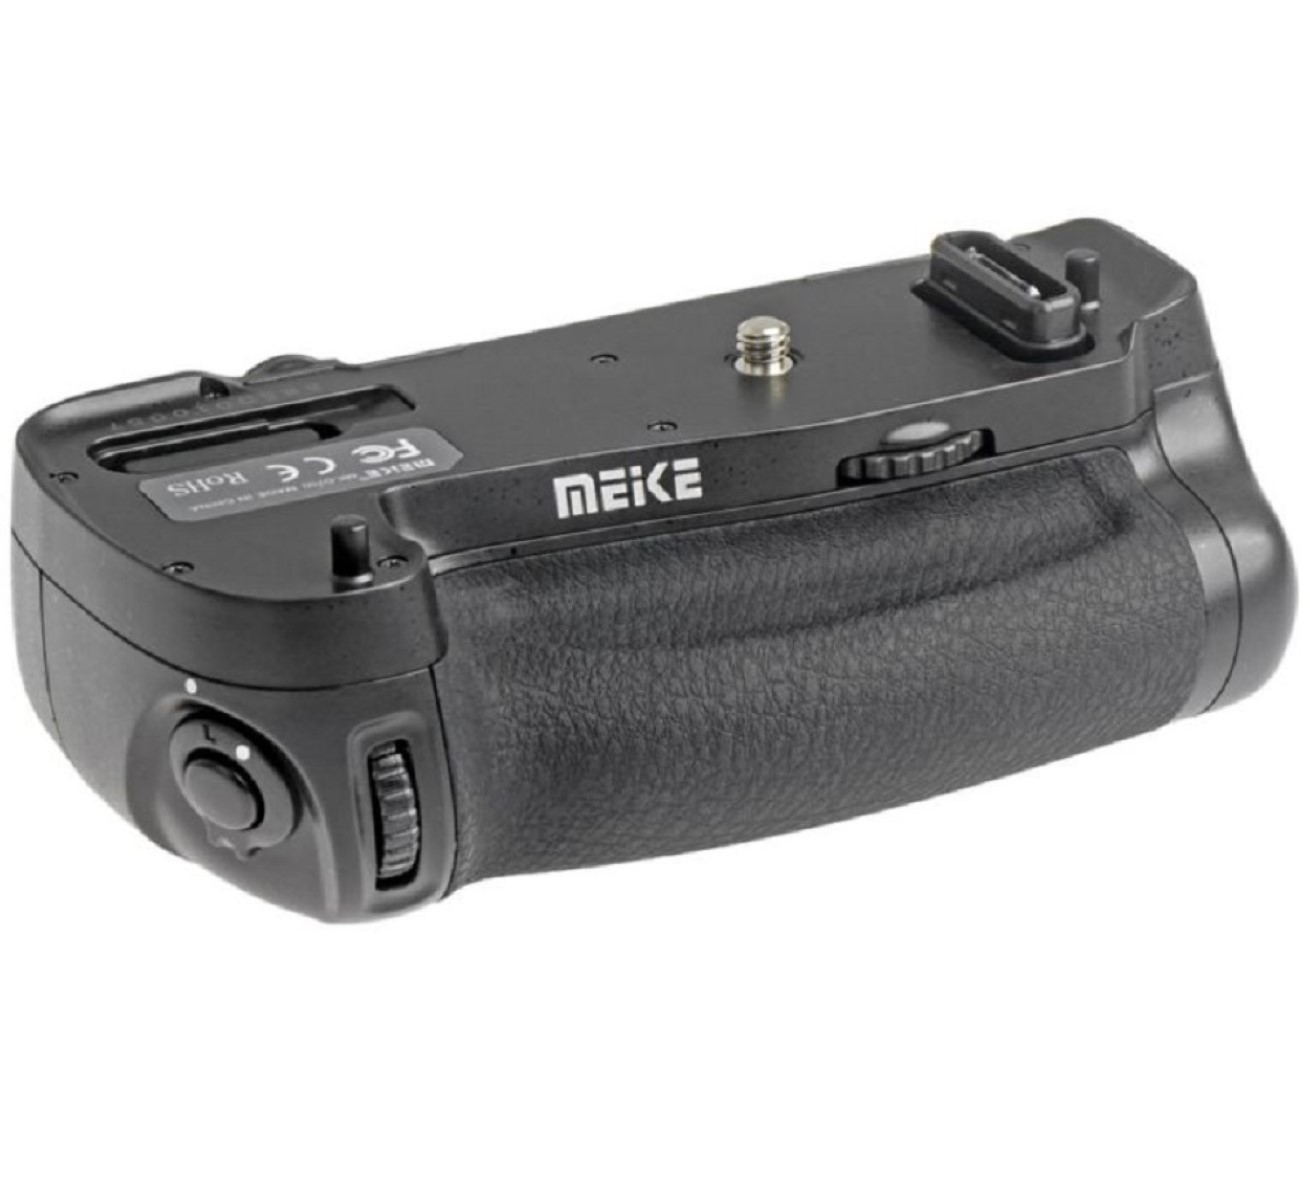 für Nikon D750 Batteriegriff für passend Black, wie Funk-Timer-Fernauslöser D750 AYEX MK-DR750, mit MB-D16 Nikon Batteriegriff,